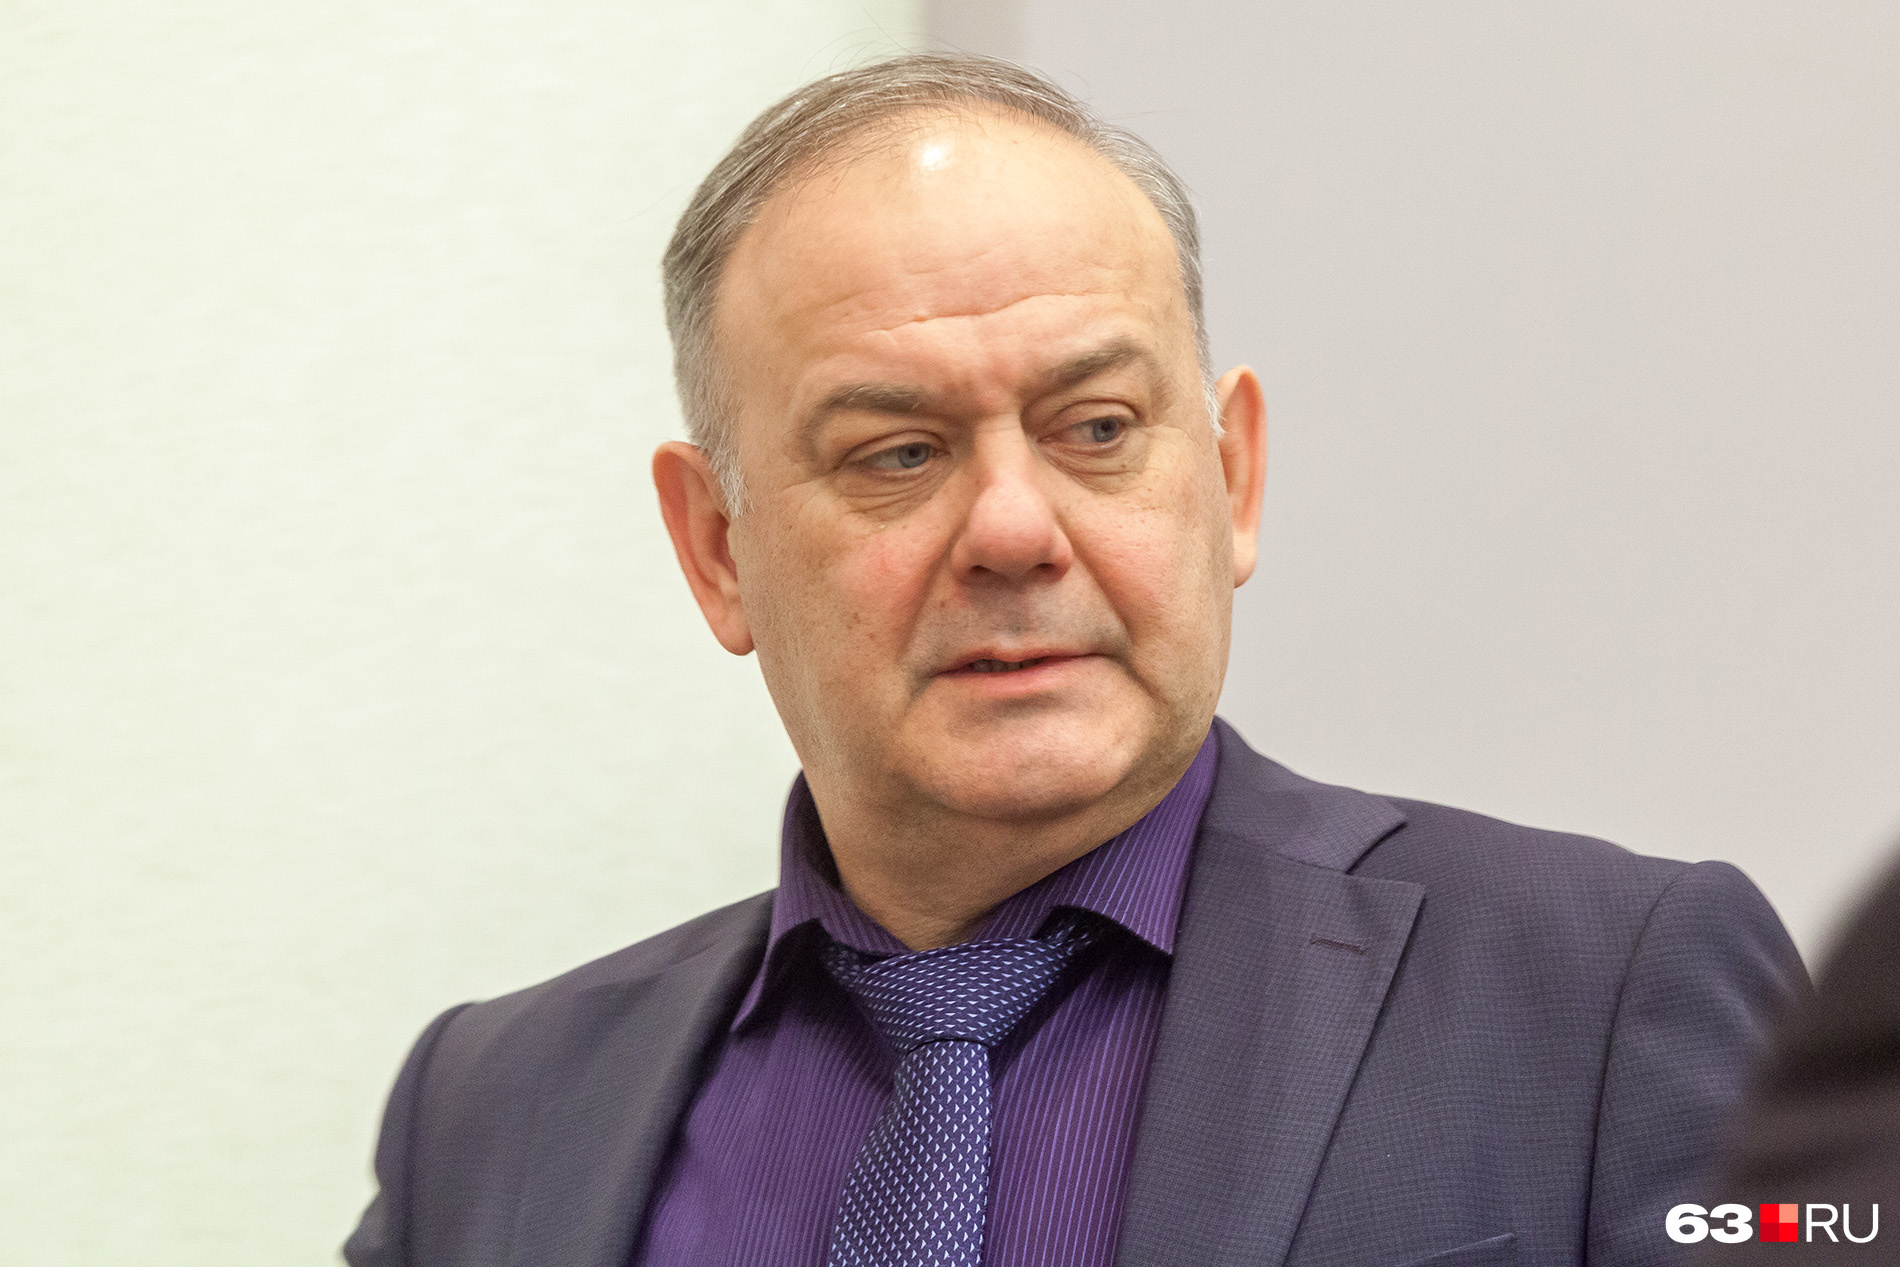 Сергей Сурков руководит компанией с 2012 года